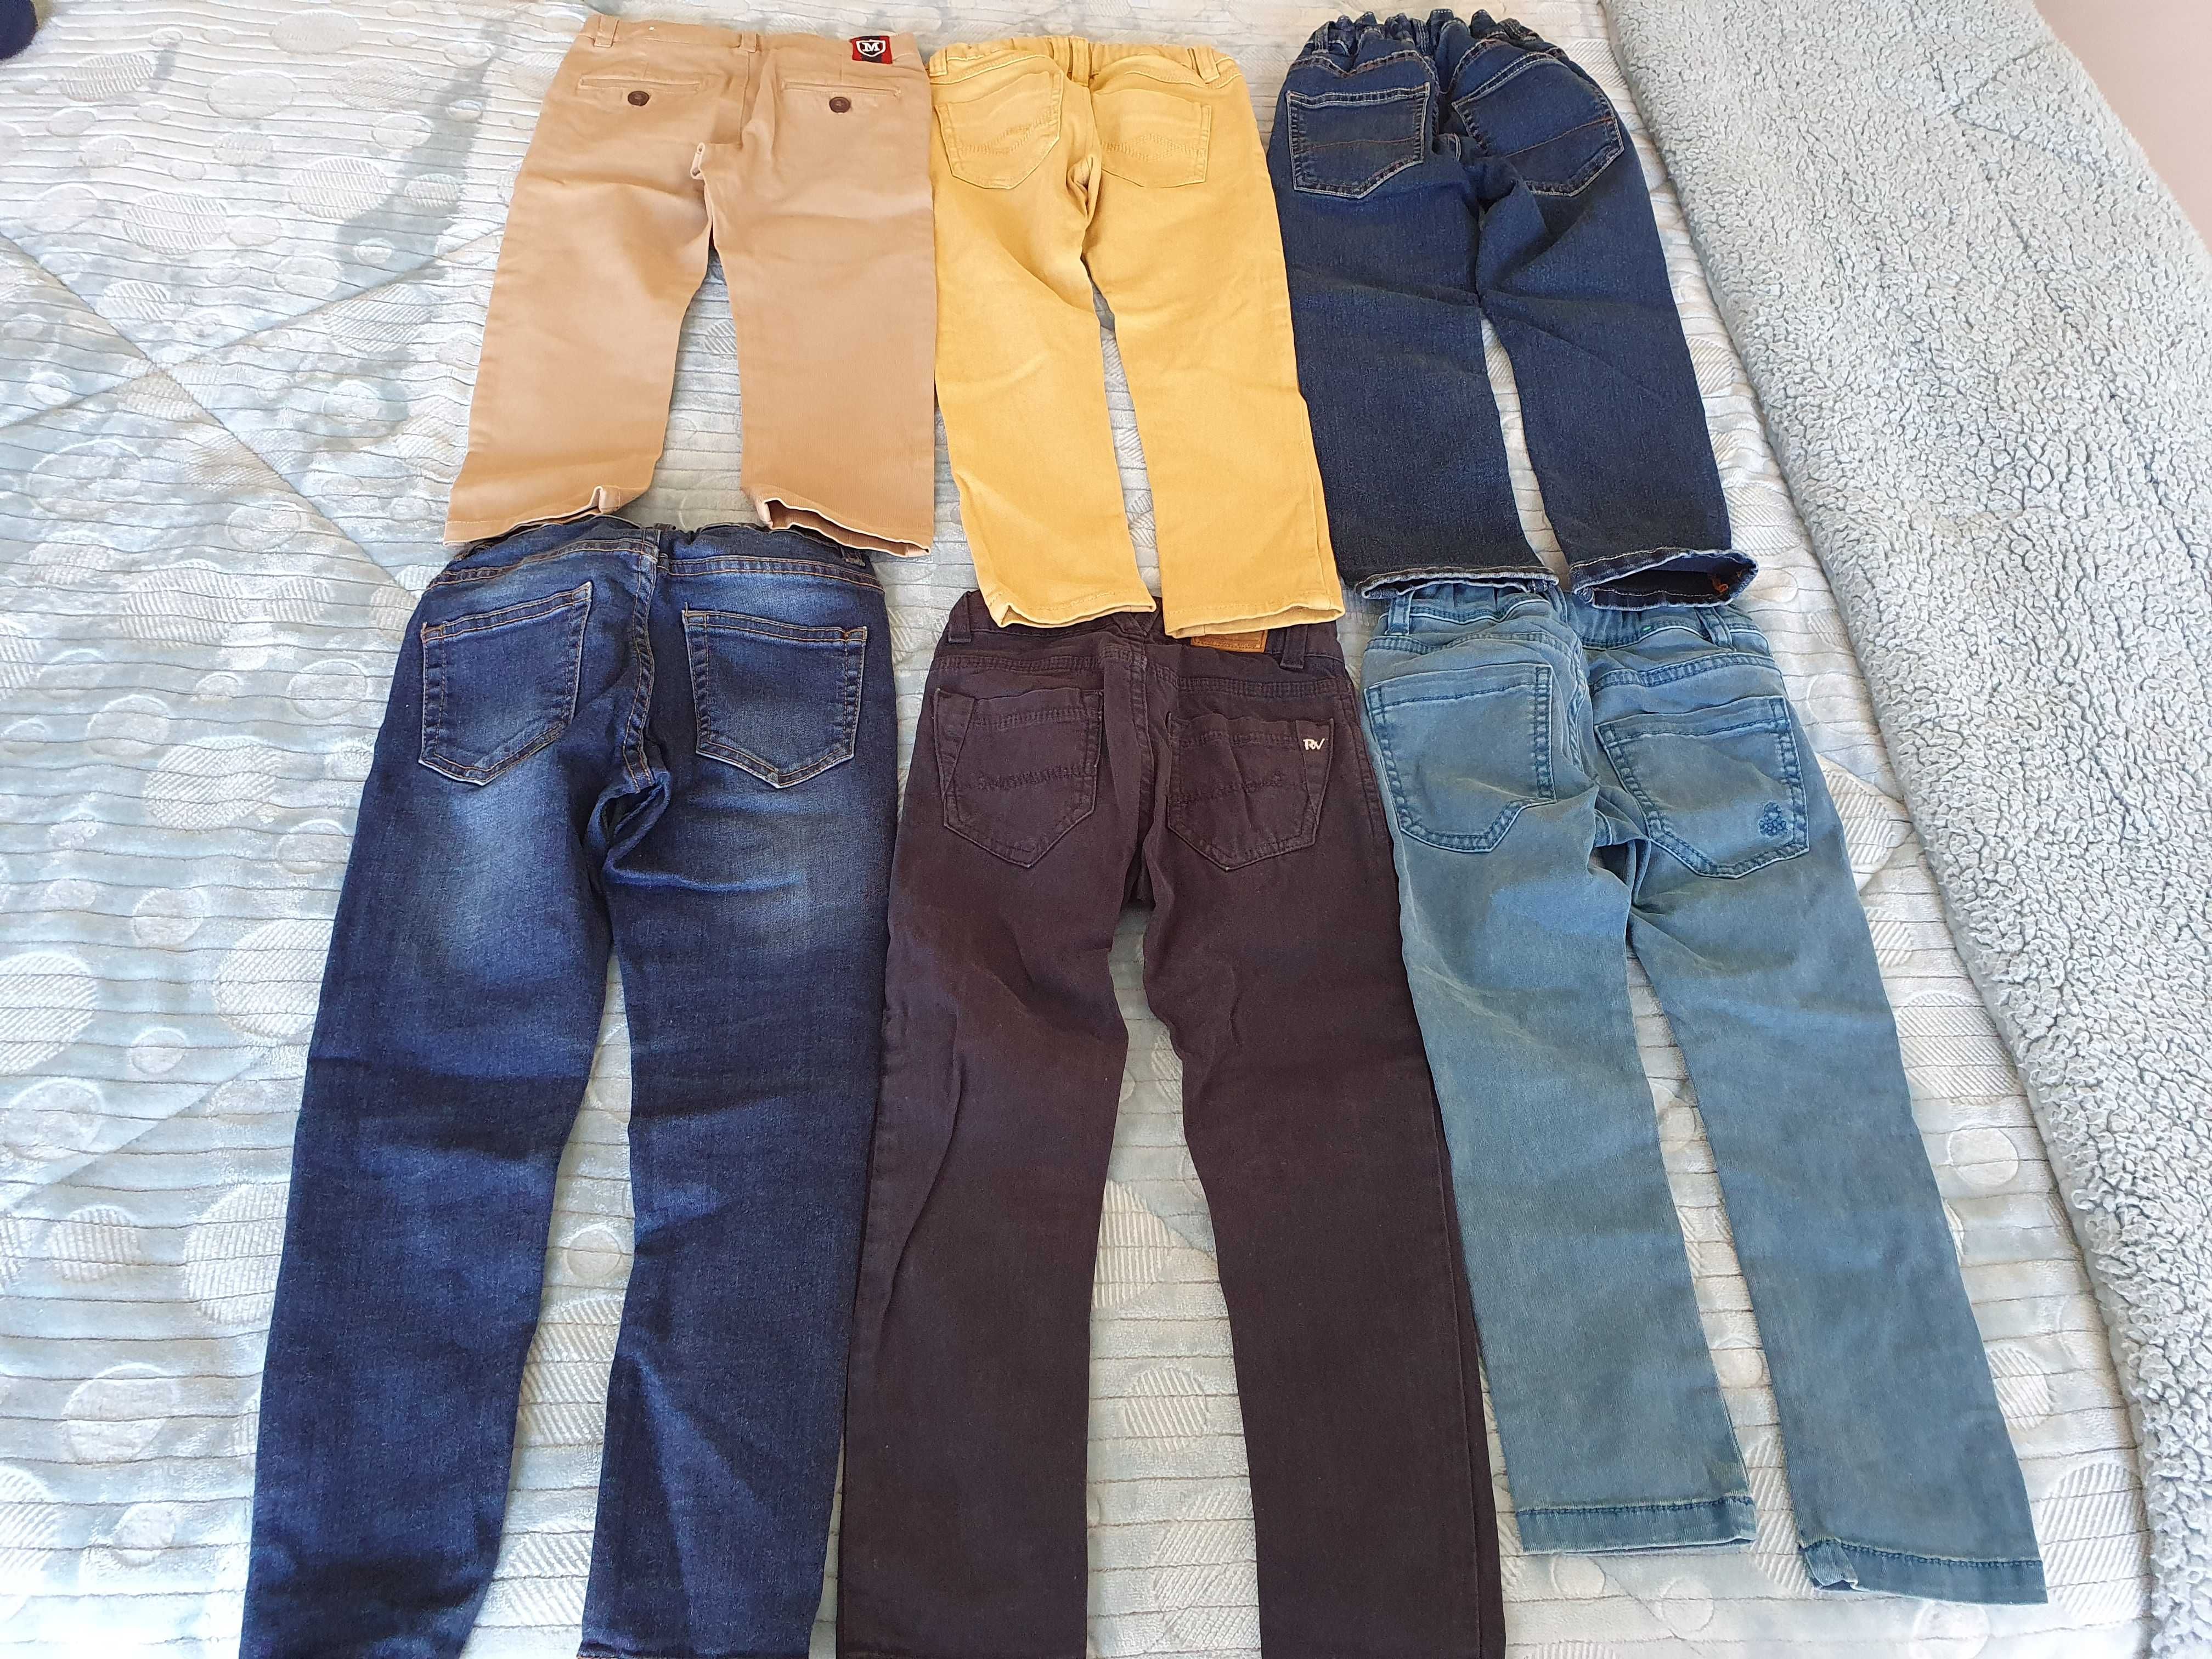 Quatro(duas vendidas) pares de calças originais de marca para menino